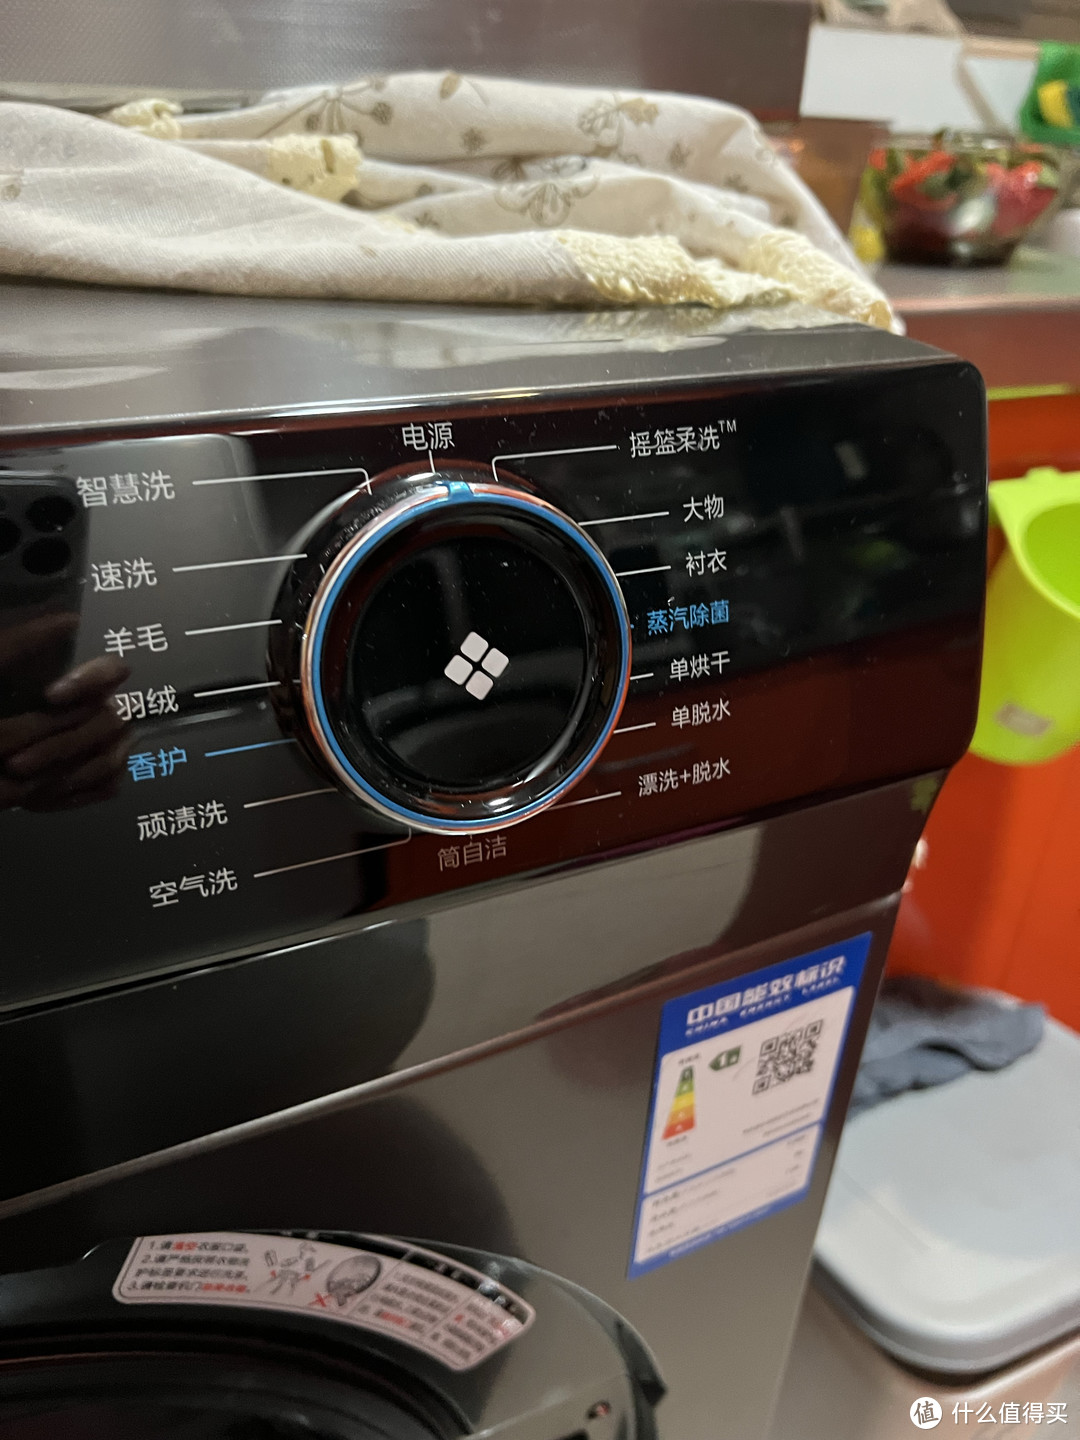 前段时间洗衣机坏了，直接买了一个自带烘干的海尔洗衣机